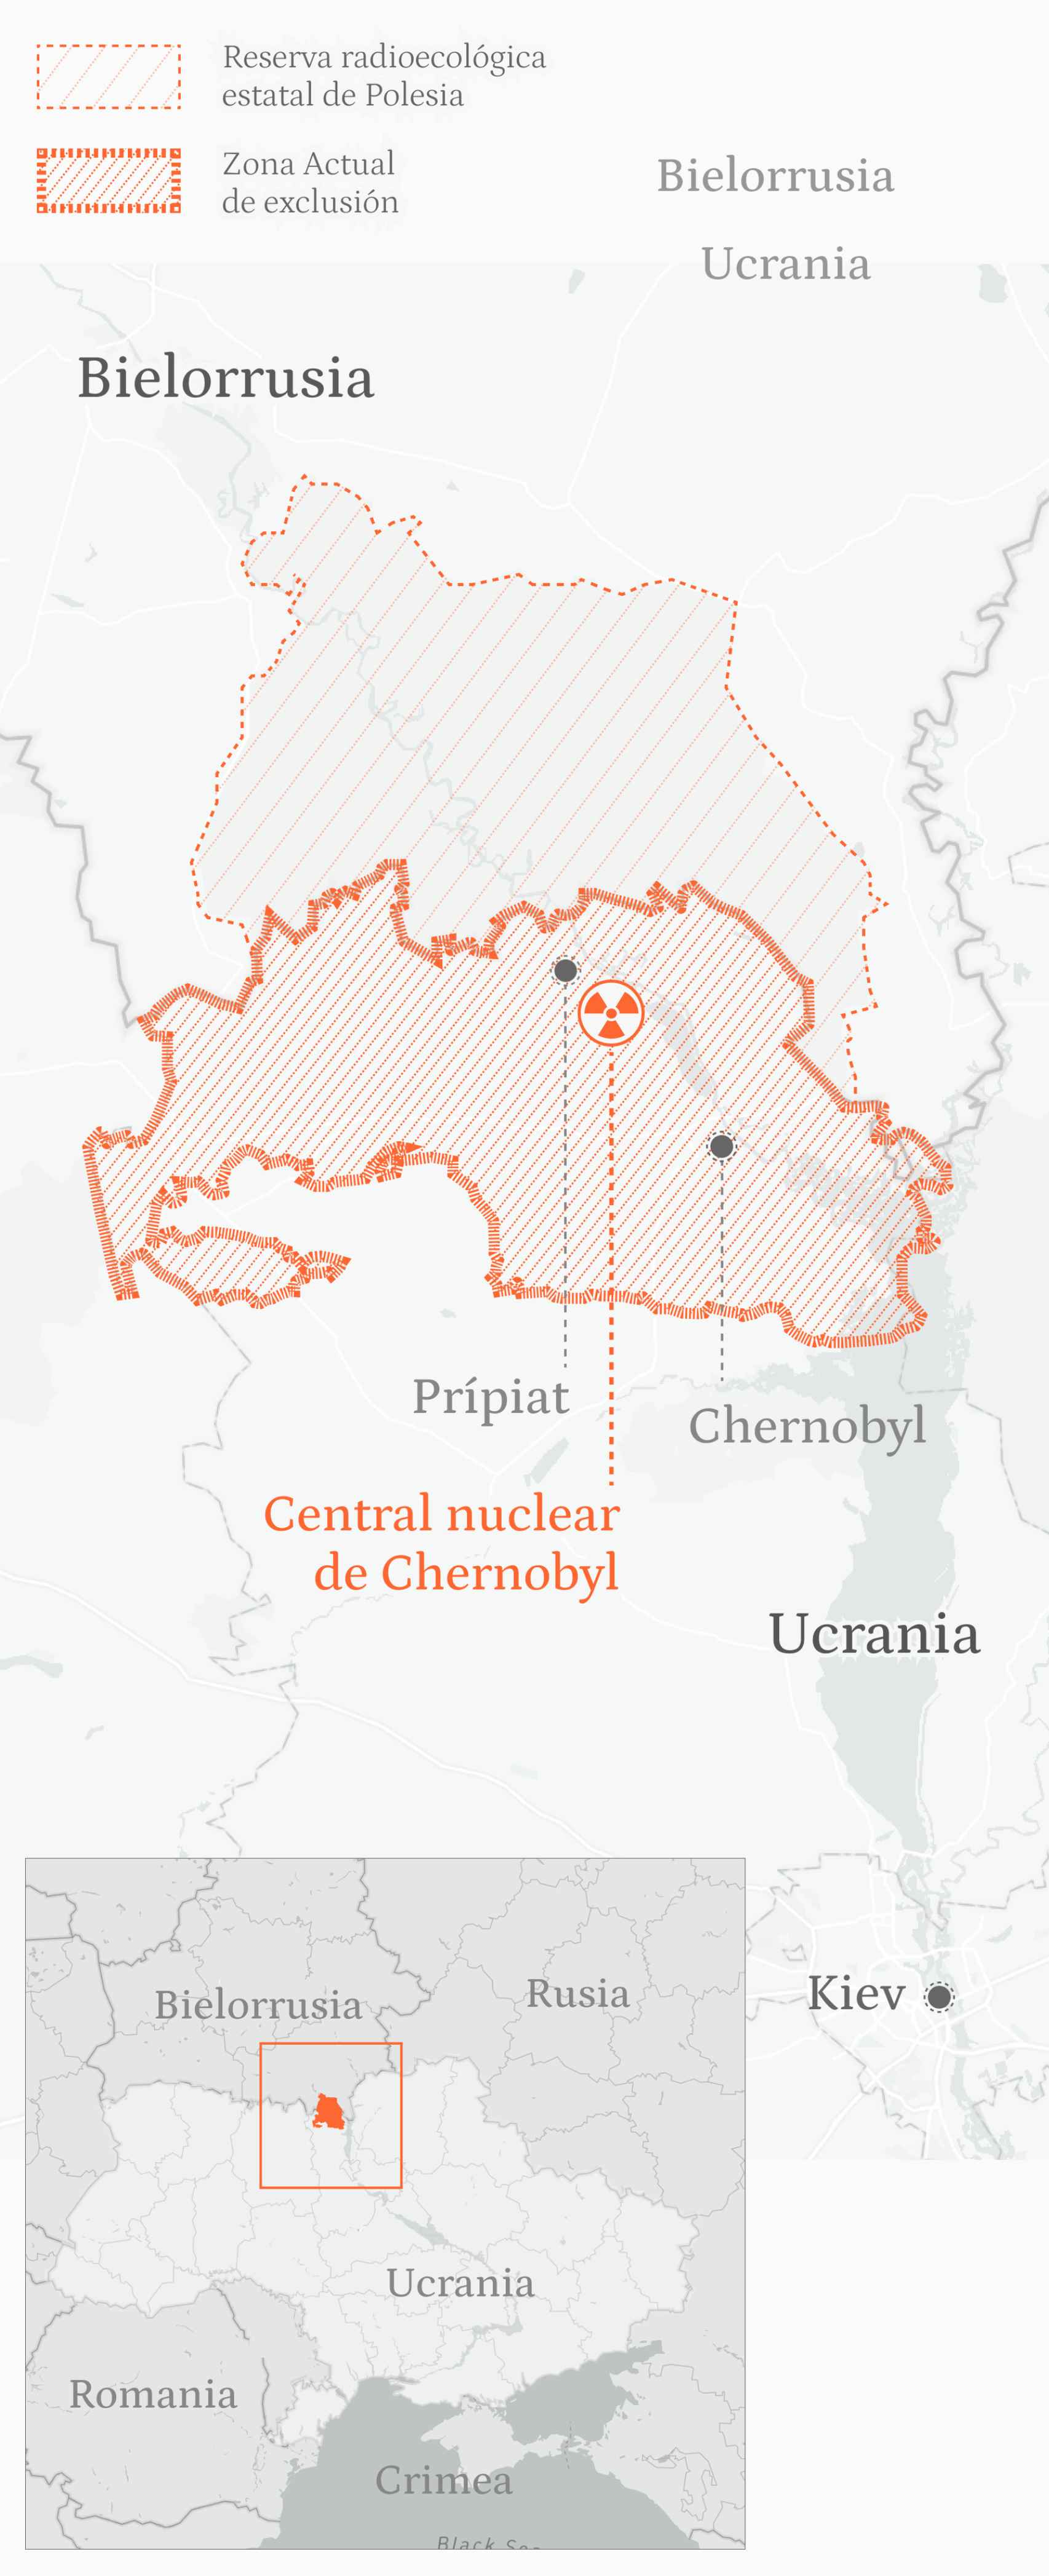 Mapa con la ubicación de la ciudad de Chernóbil, también escrito Chernobyl, y la central nuclear.